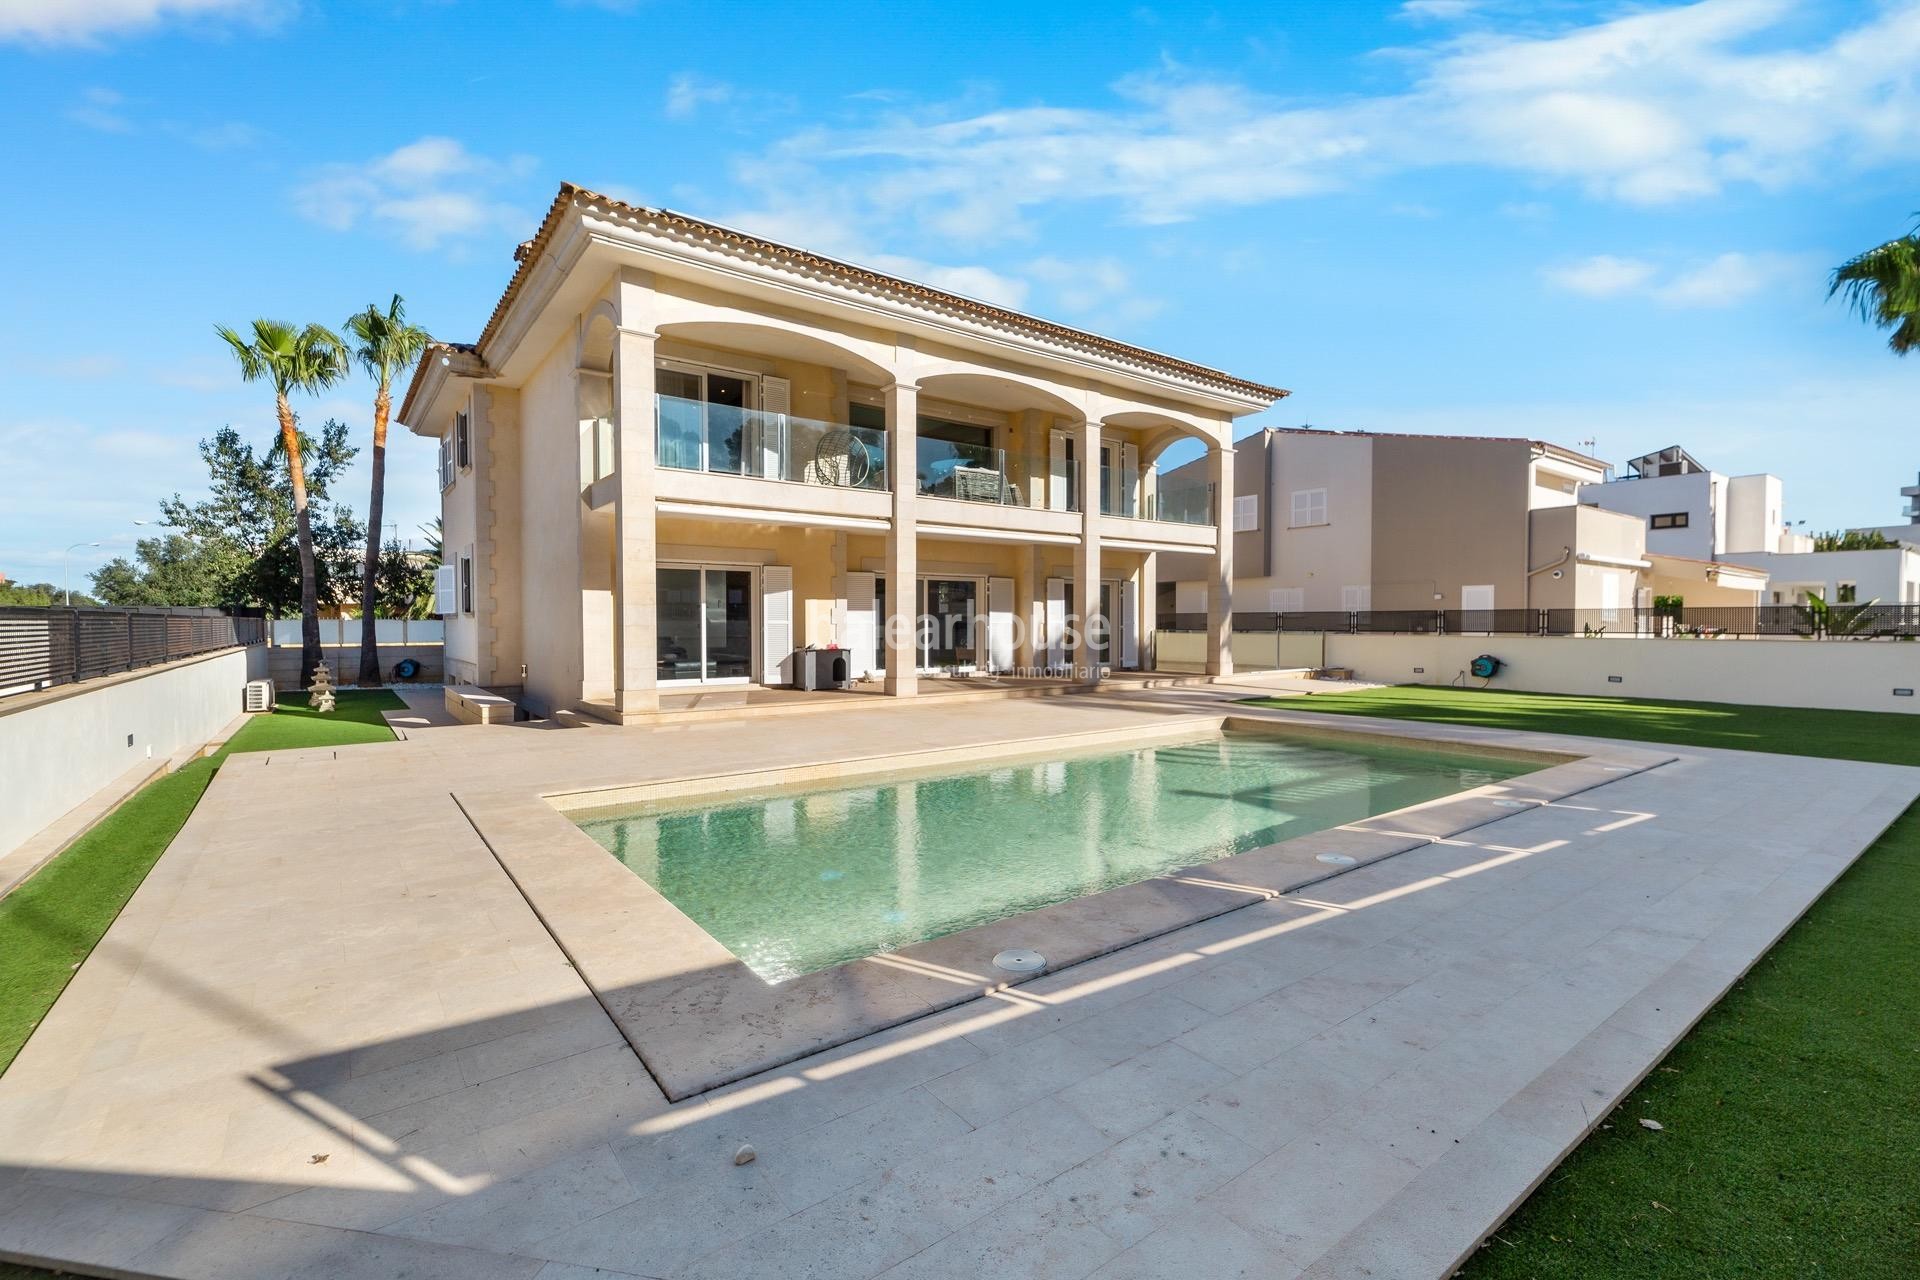 Schöne moderne Villa mit Terrassen und Pool in der Nähe des Strandes in Las Maravillas Bereich